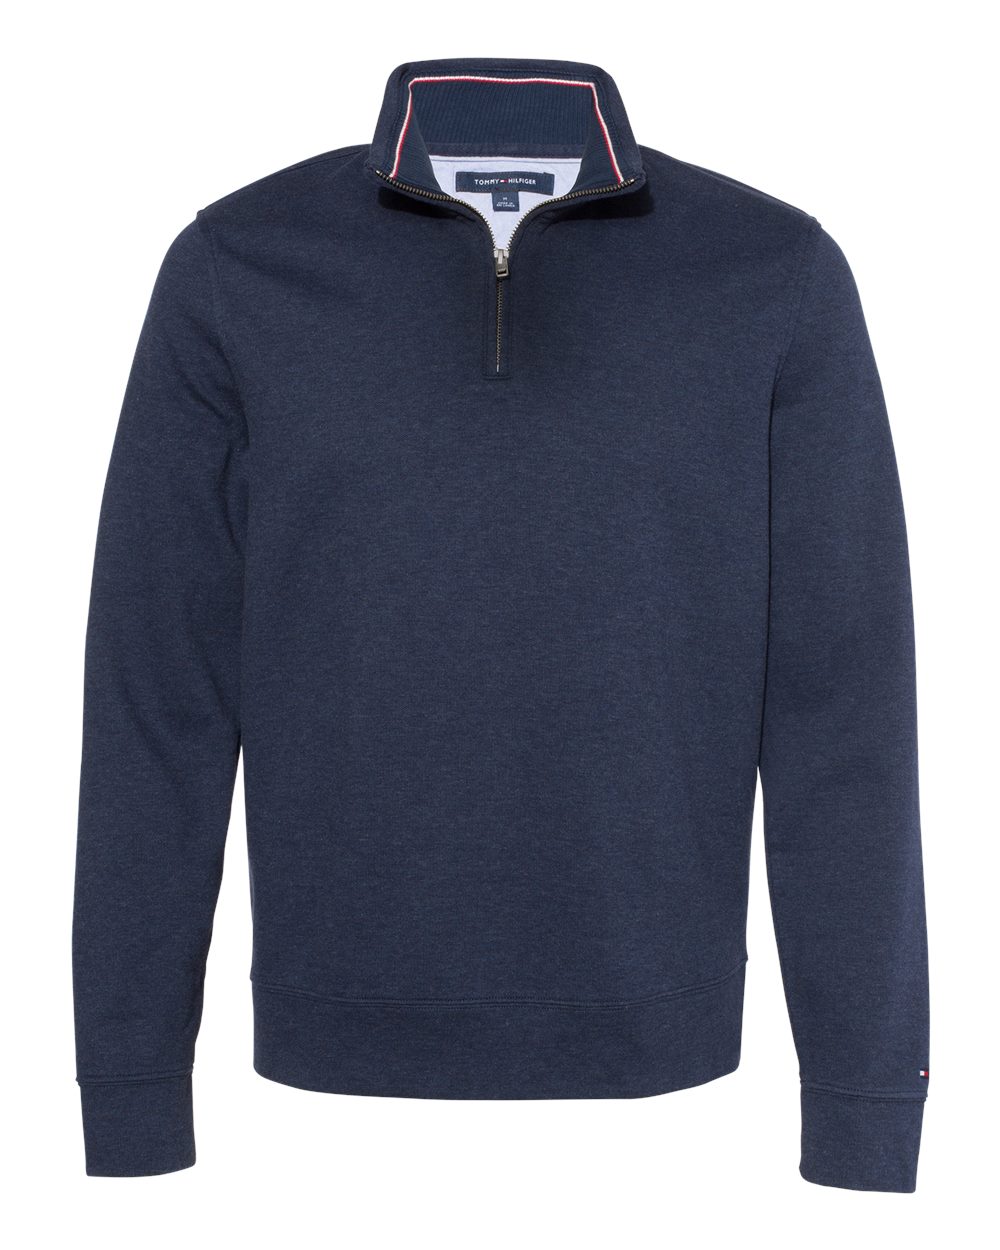 Tommy Hilfiger Quarter-Zip Pullover Sweatshirt #13H1858 Heather Navy